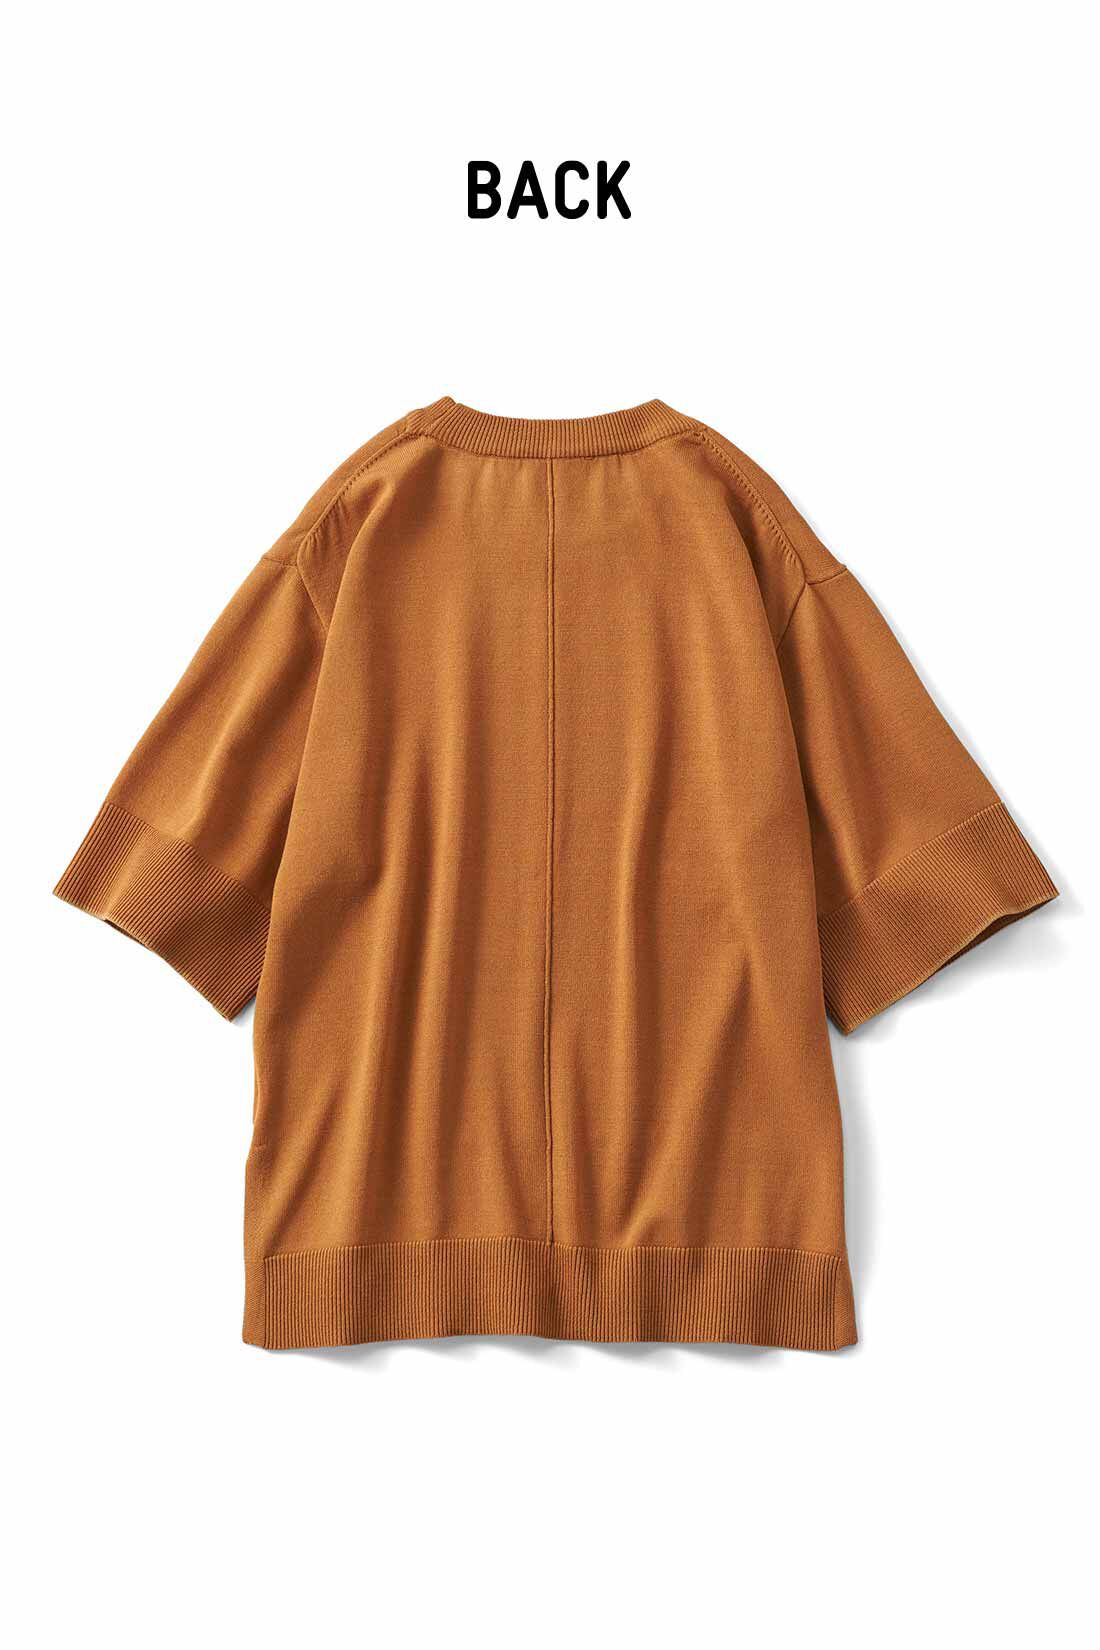 Real Stock|リブ イン コンフォート　Tシャツ感覚で着れちゃう きれいめニットトップス〈キャラメル〉